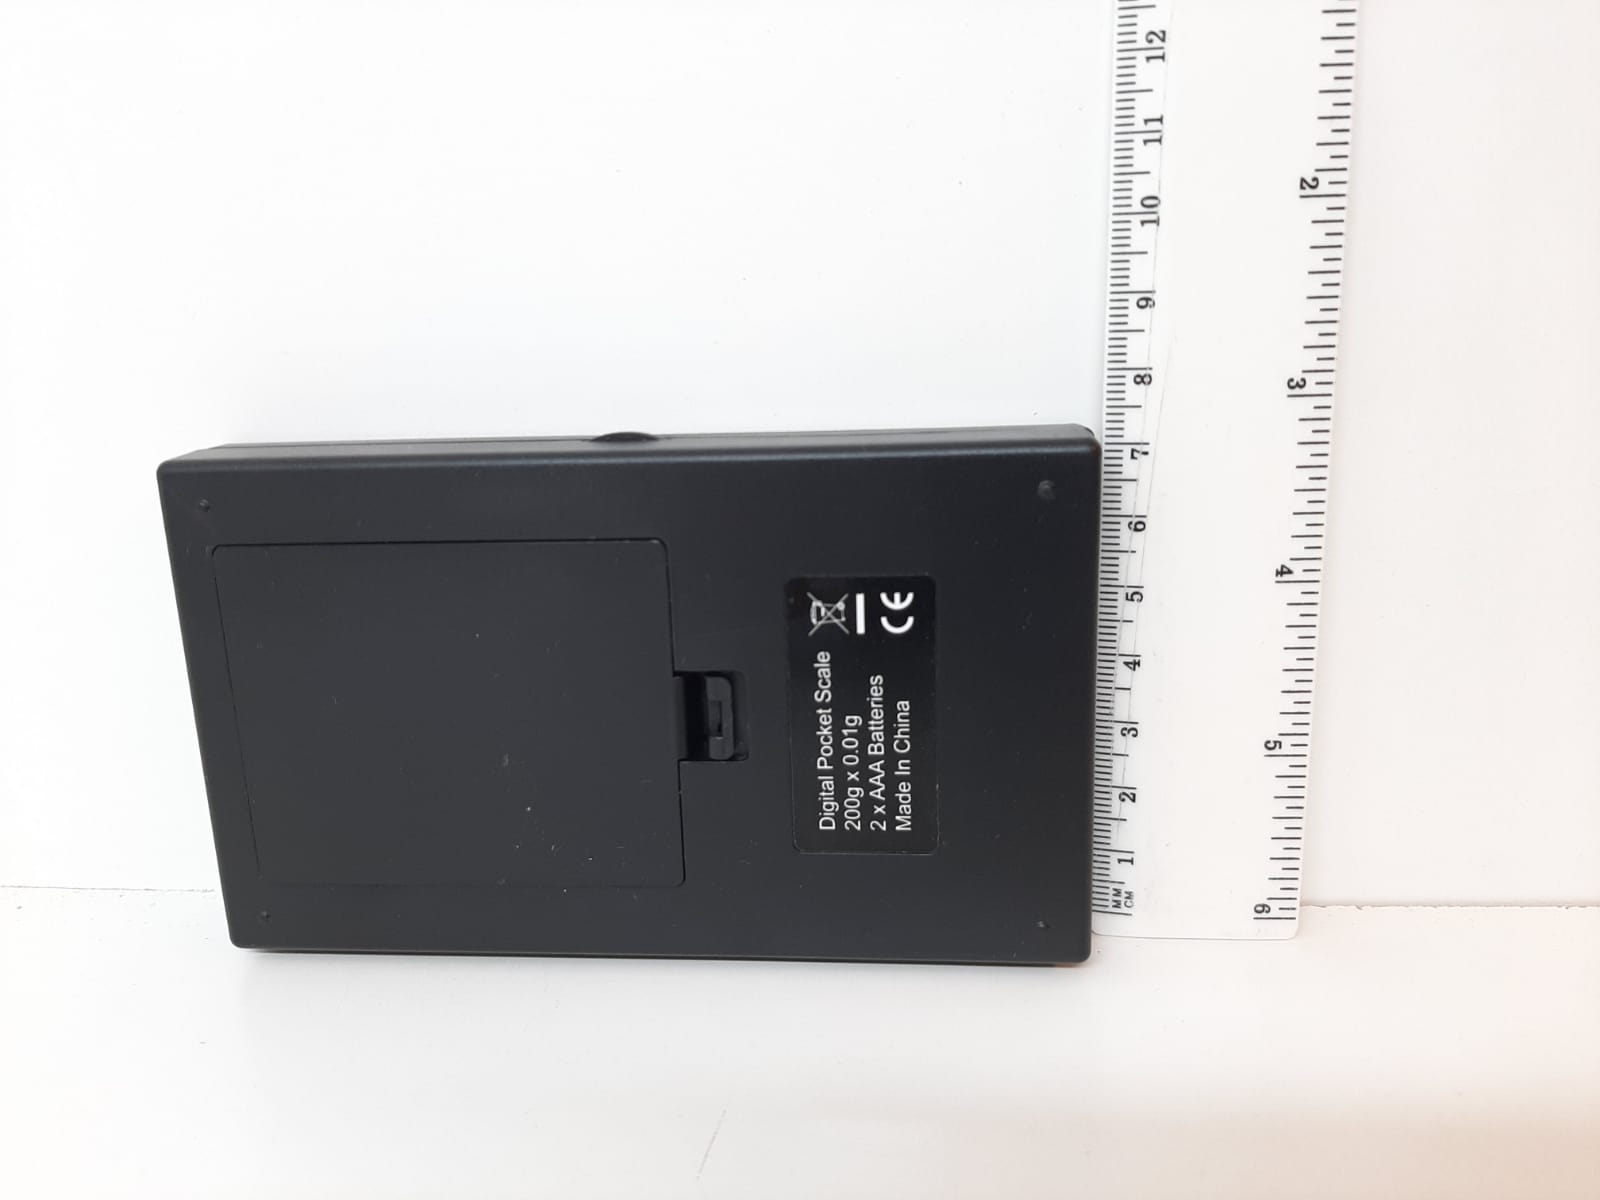 Digitalvåg (200 / 0.01 gram) + Vikt (10 g)